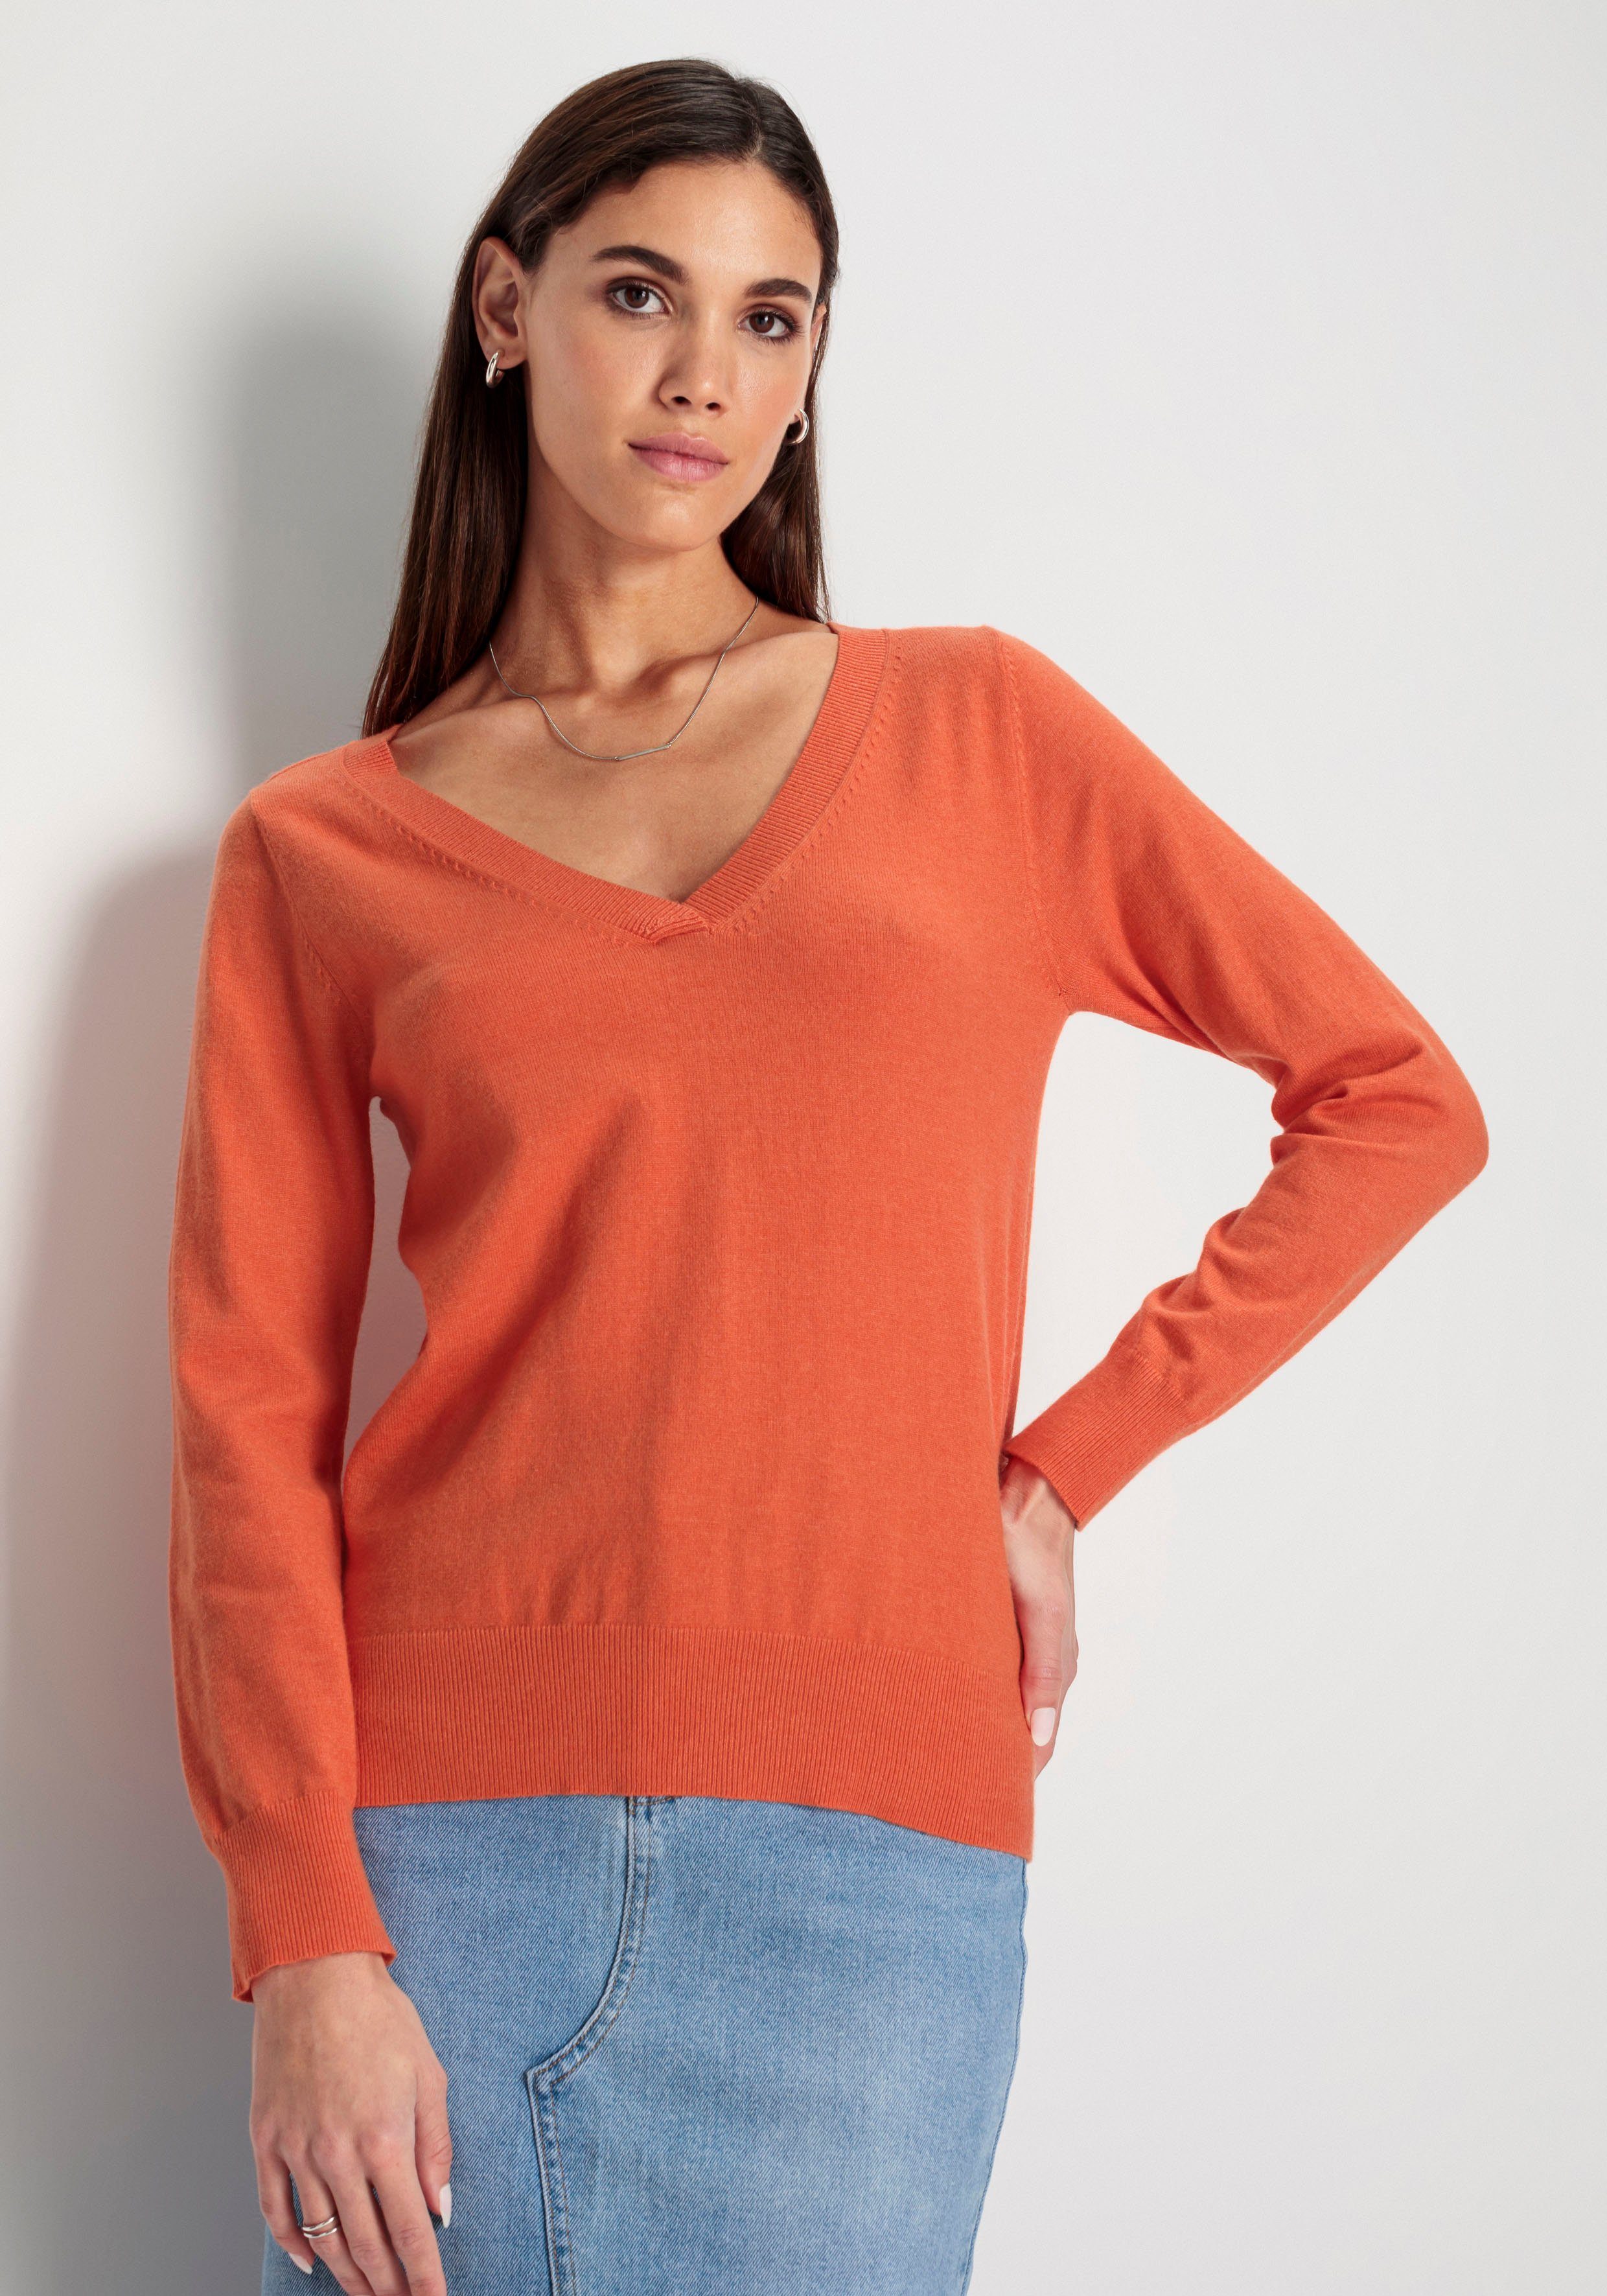 Vorzüglich HECHTER PARIS - melange V-Ausschnitt-Pullover melange in Optik KOLLEKTION NEUE orange